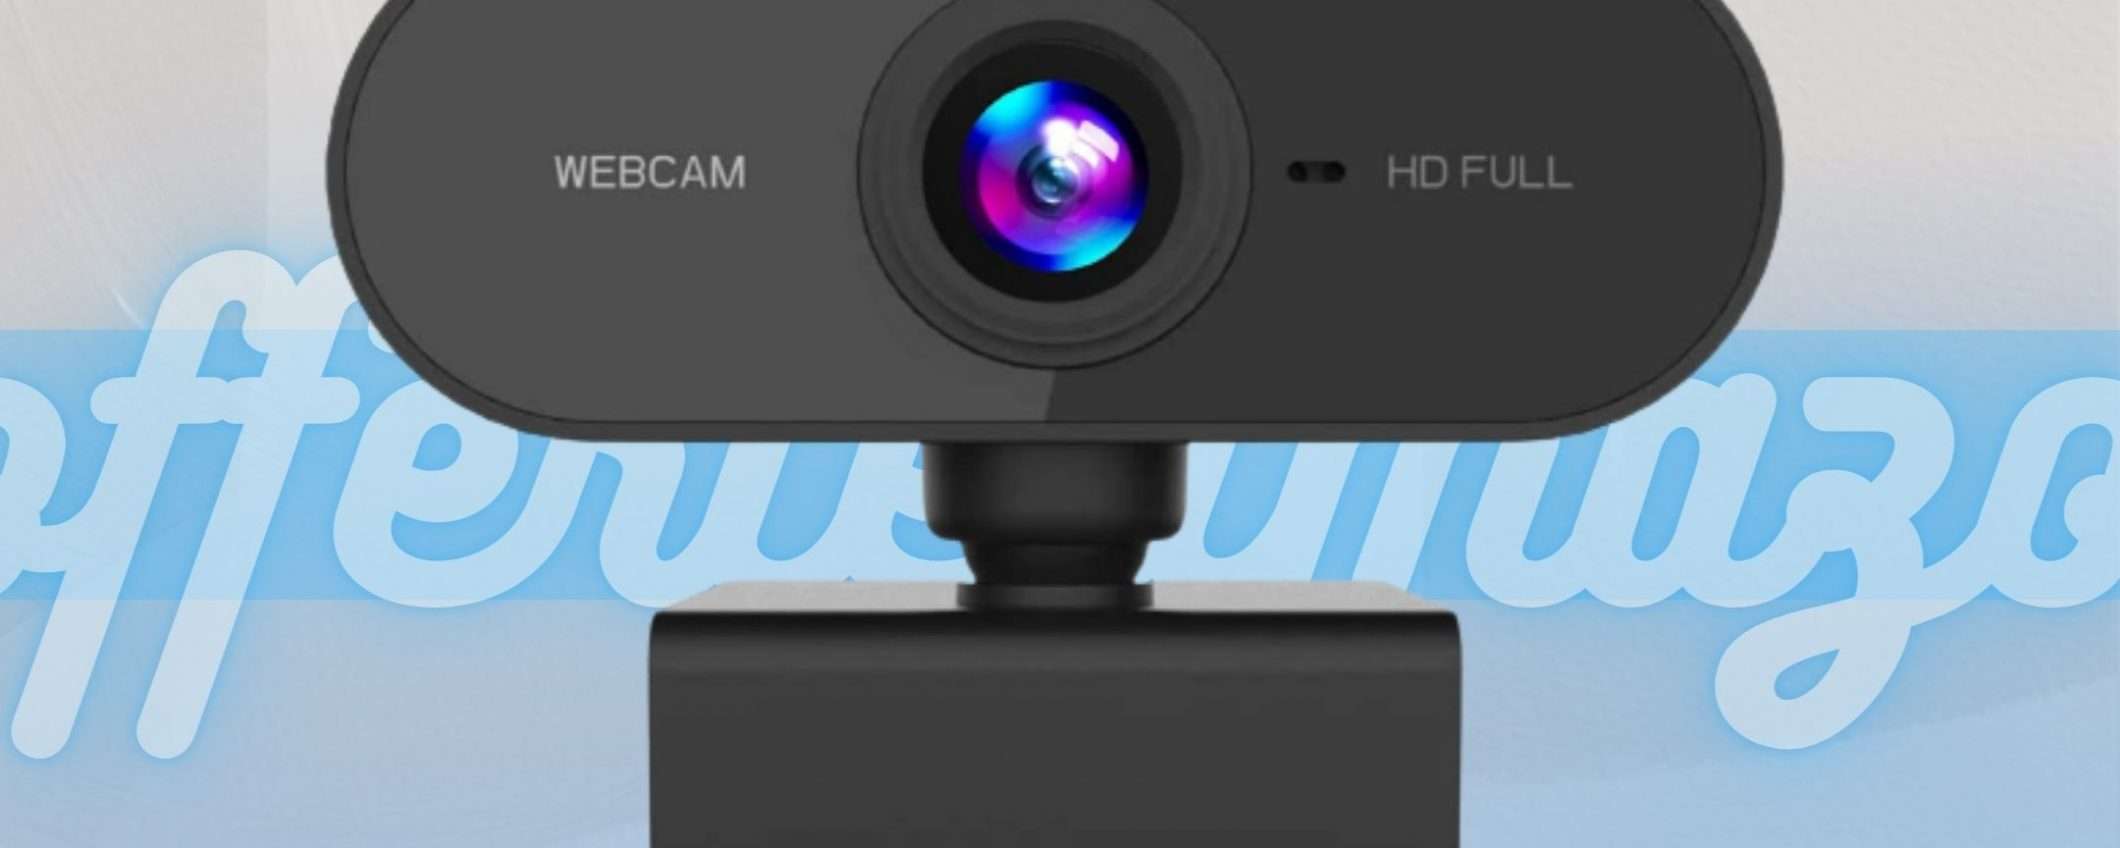 Webcam Full HD a prezzo stracciato: una vera occasione (8€)